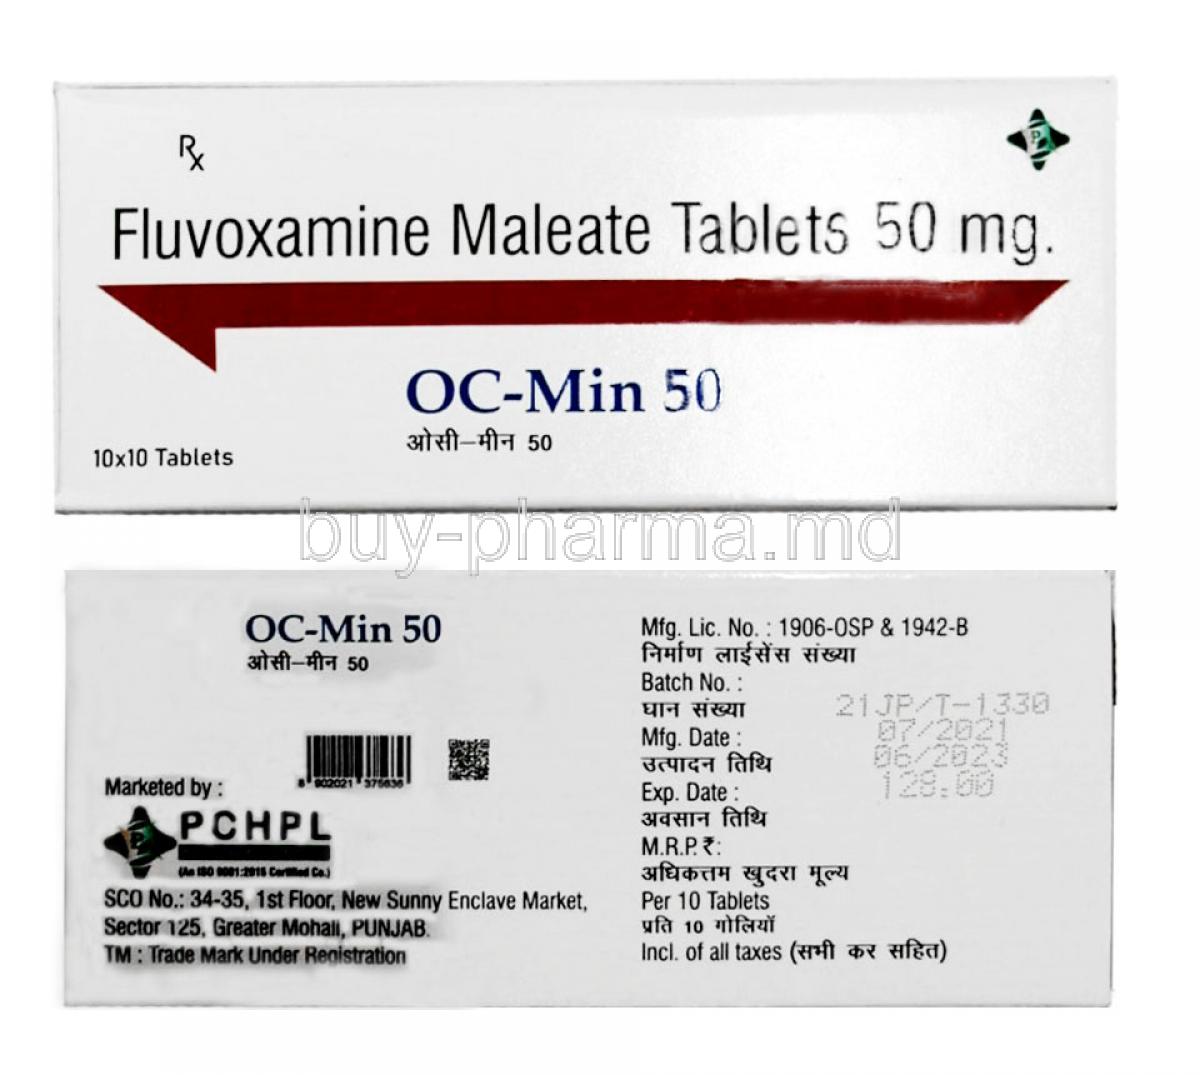 OC-Min 50, Fluvoxamine 50mg,Tablet,PCHPL, Box information